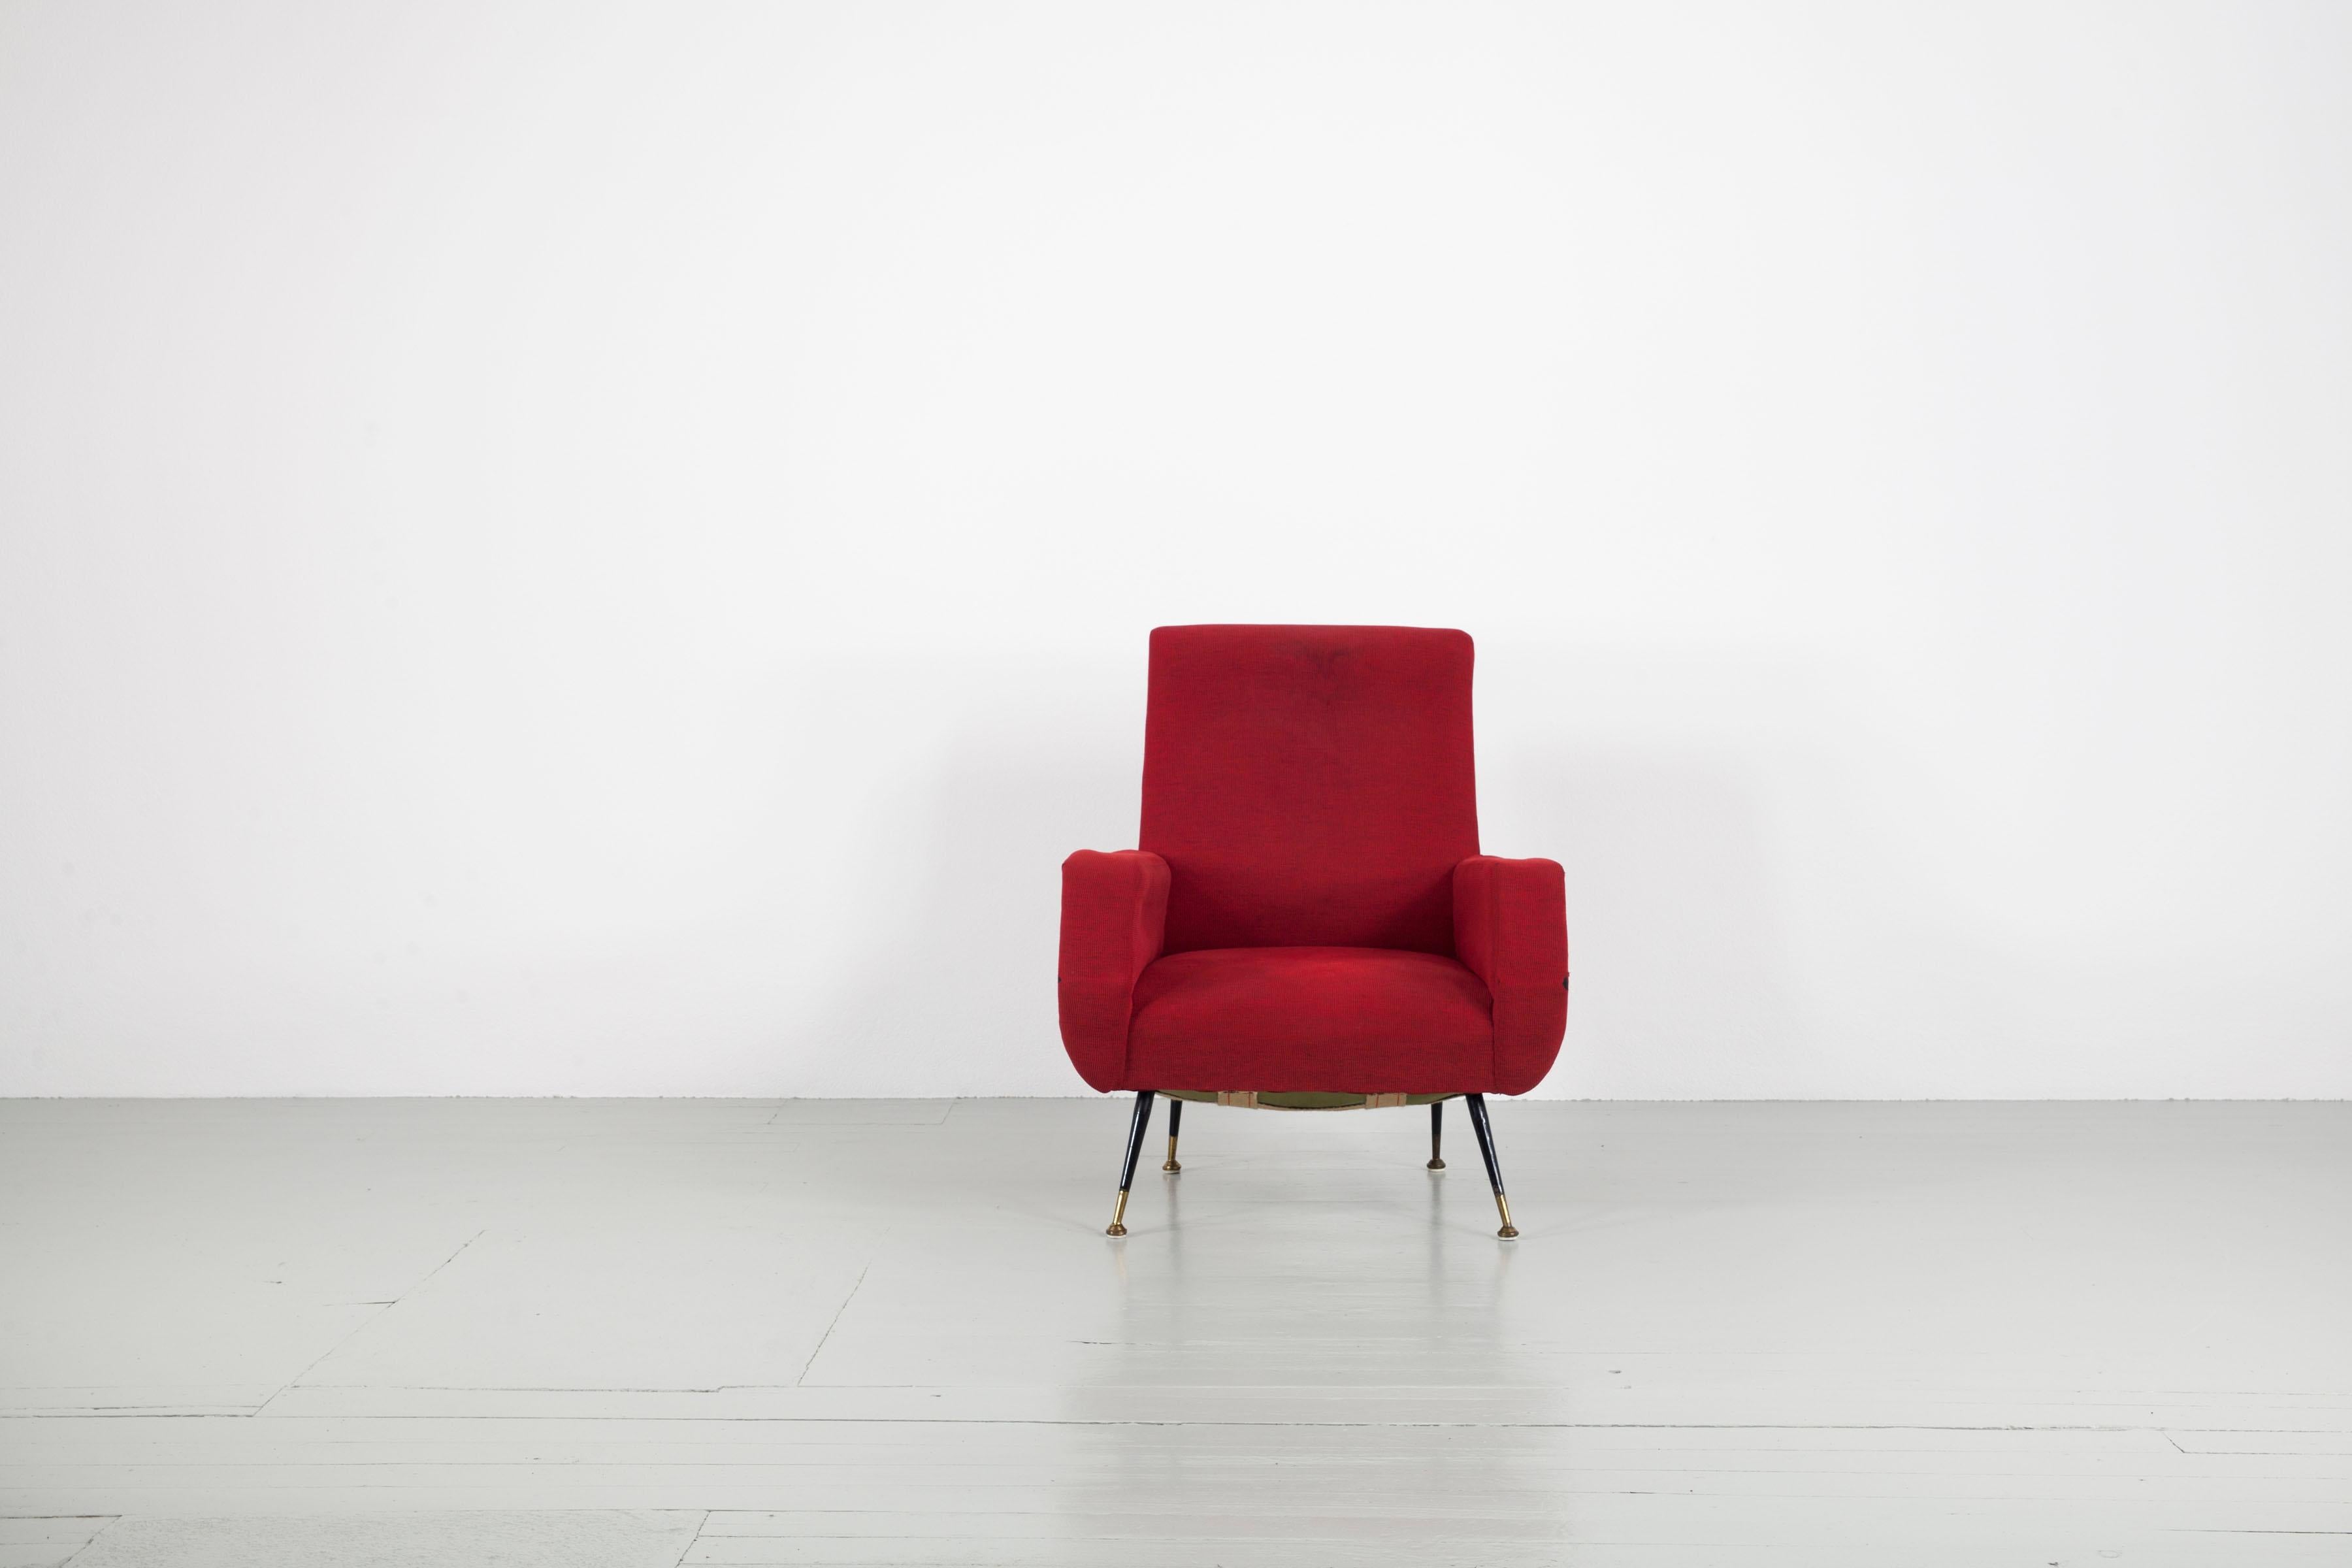 Sessel aus Italien, 1950er Jahre. Dieses Stück ist in seiner Gestaltung eng mit der Tradition von Gianfranco Frattini verbunden. Der Sessel hat die typischen Metallfüße mit Messingelementen und einen roten Polsterstoff. Der Sessel muss neu